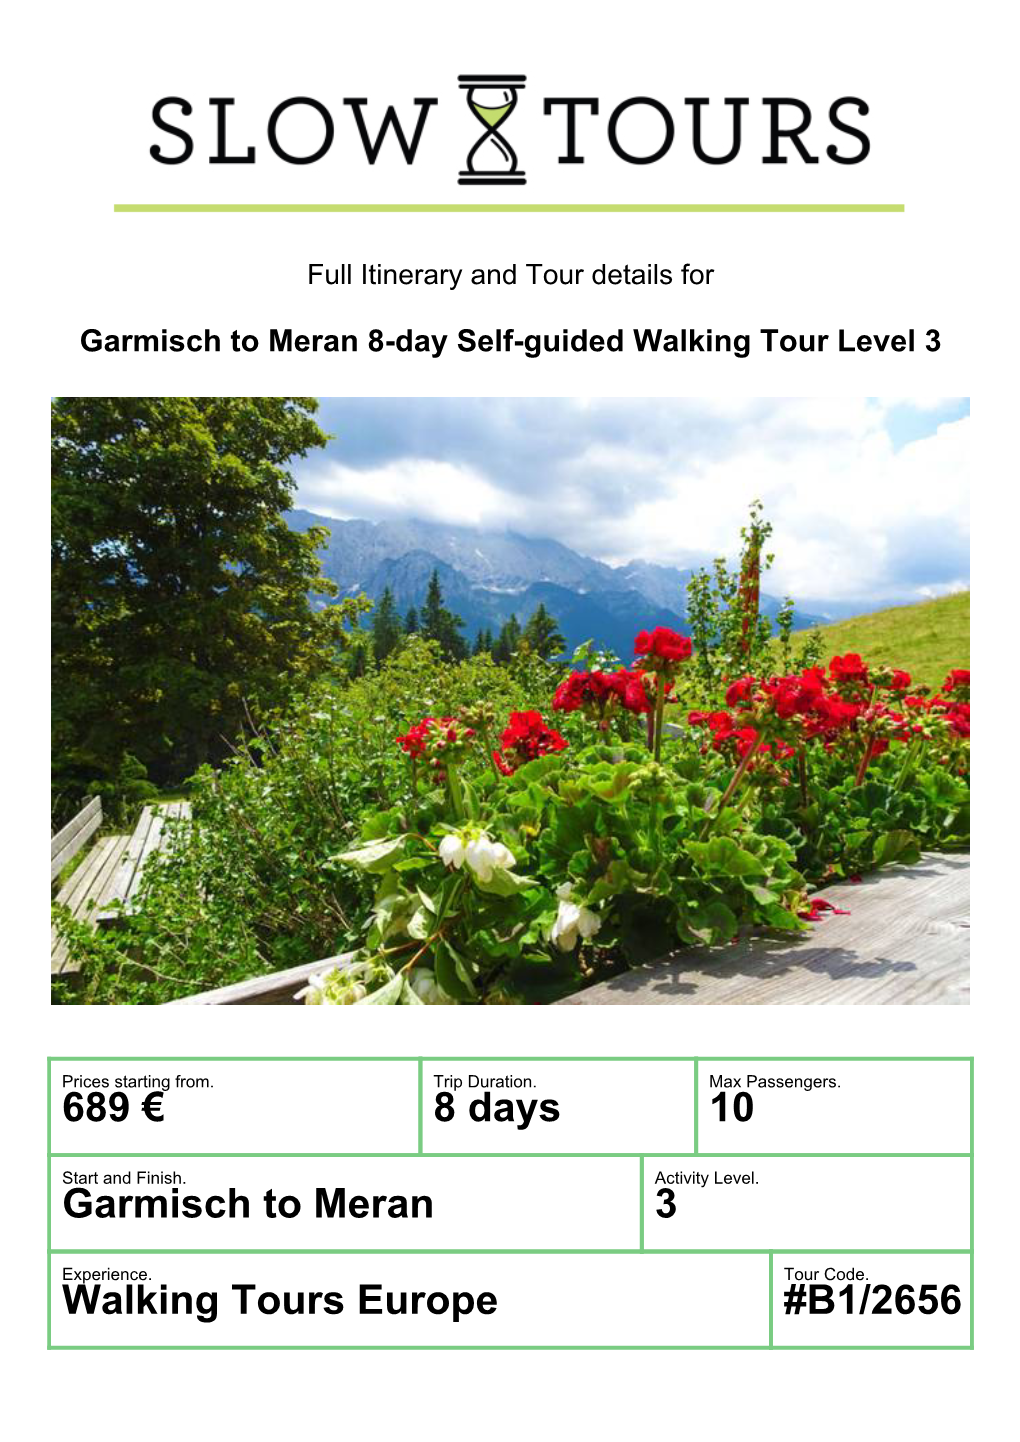 Walking Tours Europe #B1/2656 Garmisch to Meran 8-Day Self-Guided Walking Tour Level 3